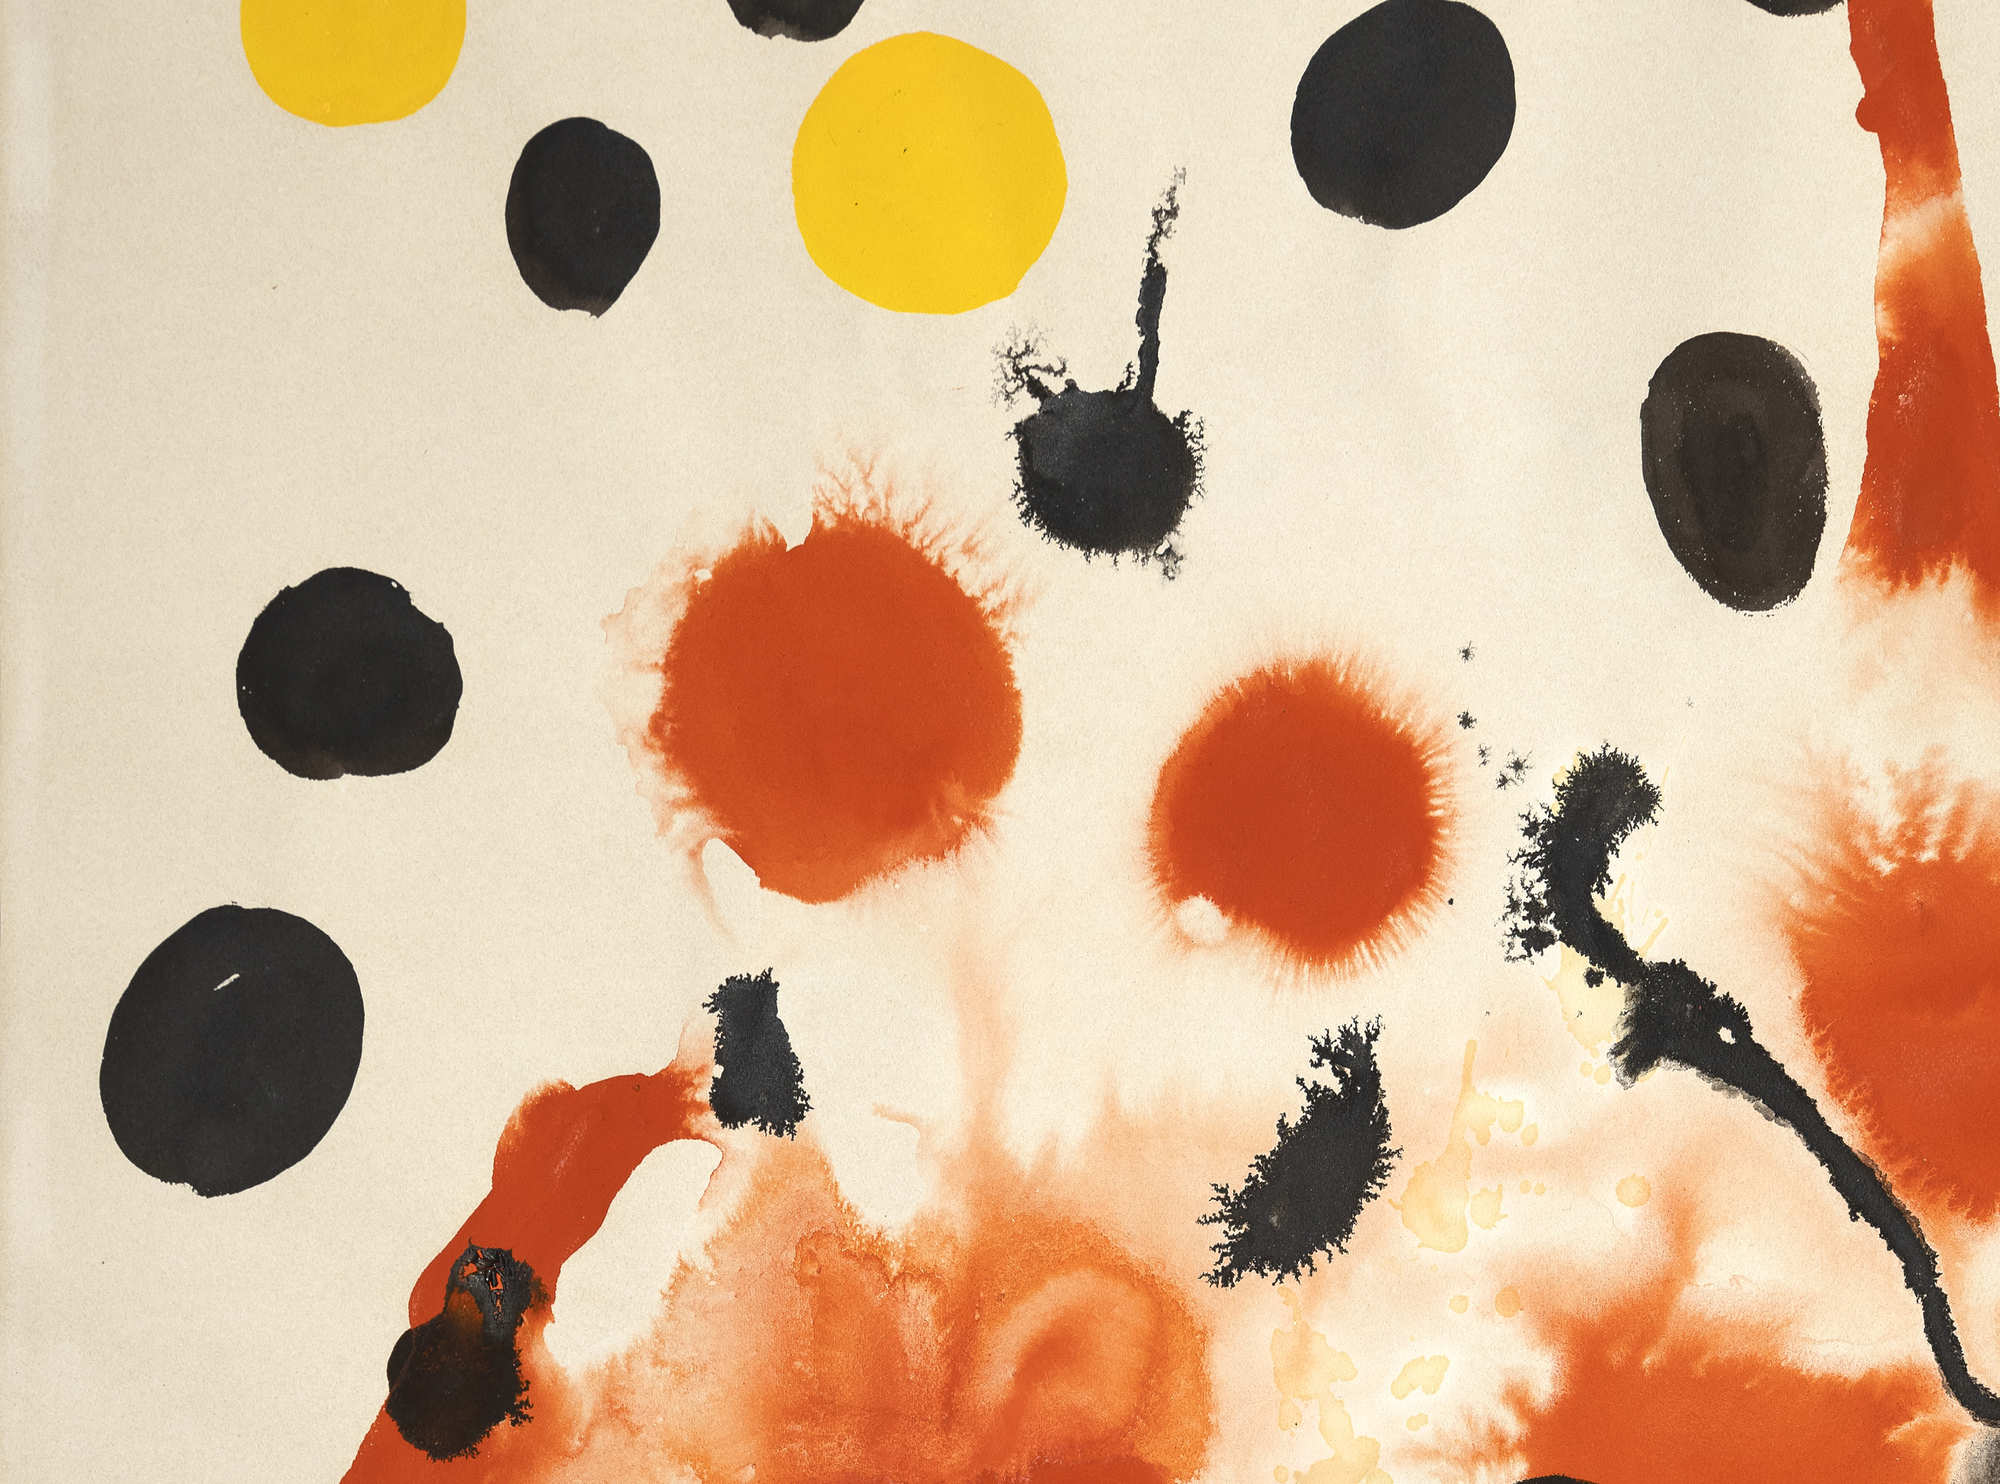 Rouge Mouille (Rojo mojado) de Alexander Calder presenta un fondo de círculos rojos, algunos dispersándose como explosiones, creando una sensación de enérgica expansión, y otros corriendo hacia abajo como si fueran estelas de un castillo de fuegos artificiales. Este animado telón de fondo está adornado con numerosas bolas redondas opacas, predominantemente negras, pero intercaladas con llamativas esferas azules, rojas y sutilmente amarillas. La colocación estratégica de las esferas de colores frente a los rojos explosivos capta el asombro y el espectáculo de un espectáculo de fuegos artificiales, transformando el cuadro en una metáfora visual de este acontecimiento deslumbrante y festivo. La obra resuena con emoción y vitalidad, encapsulando su belleza efímera en un medio estático.